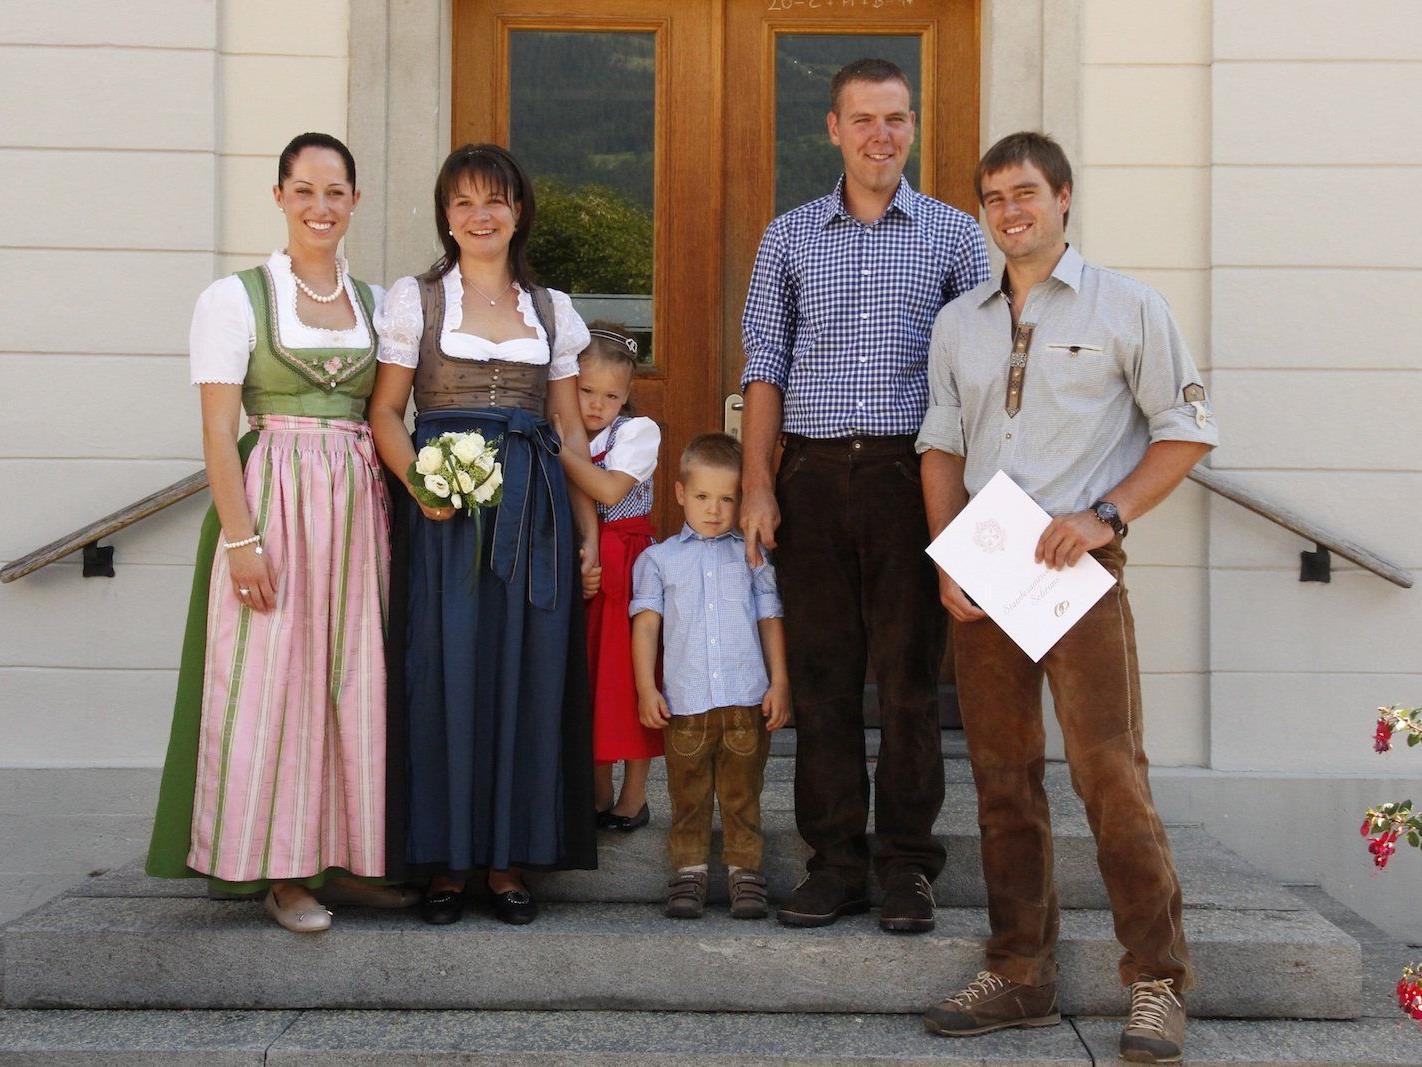 Das Brautpaar mit ihren Kindern Magdalena und Jakob sowie den Trauzeugen Sabrina Vonderleu und Johannes Bargehr